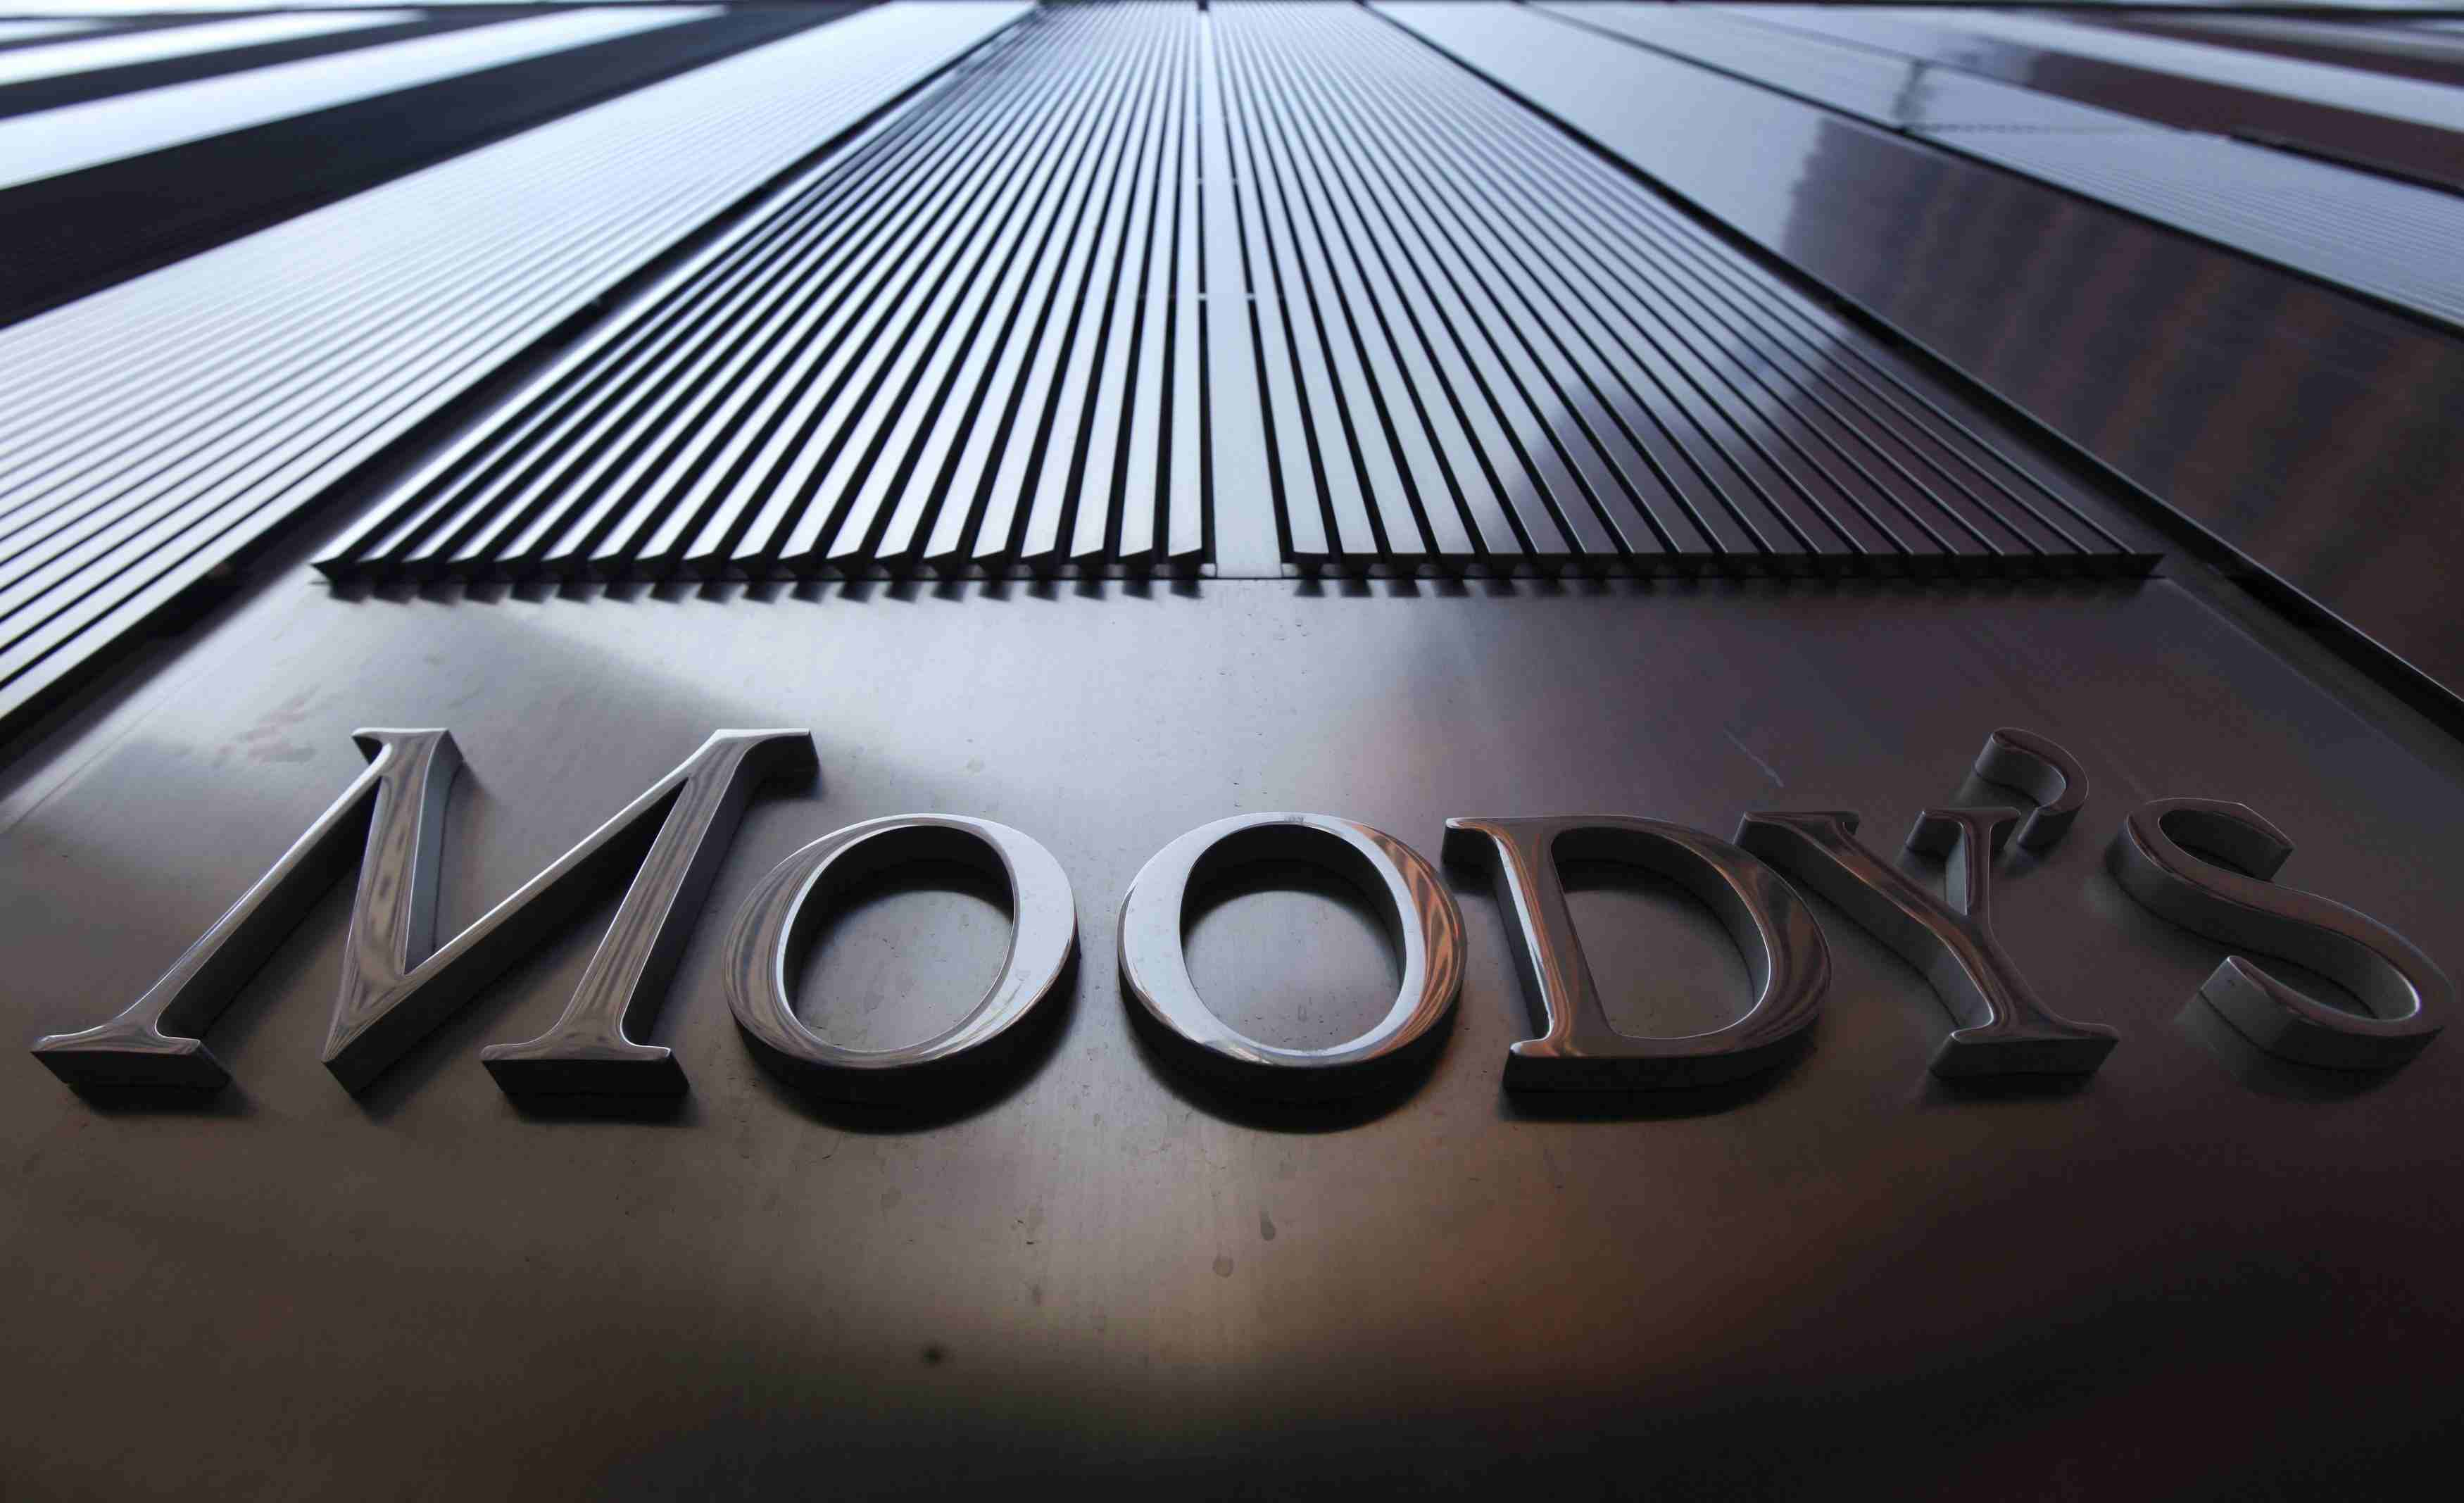 Moody's posa el dit a la nafra: Espanya s'empobrirà si Catalunya s'independitza